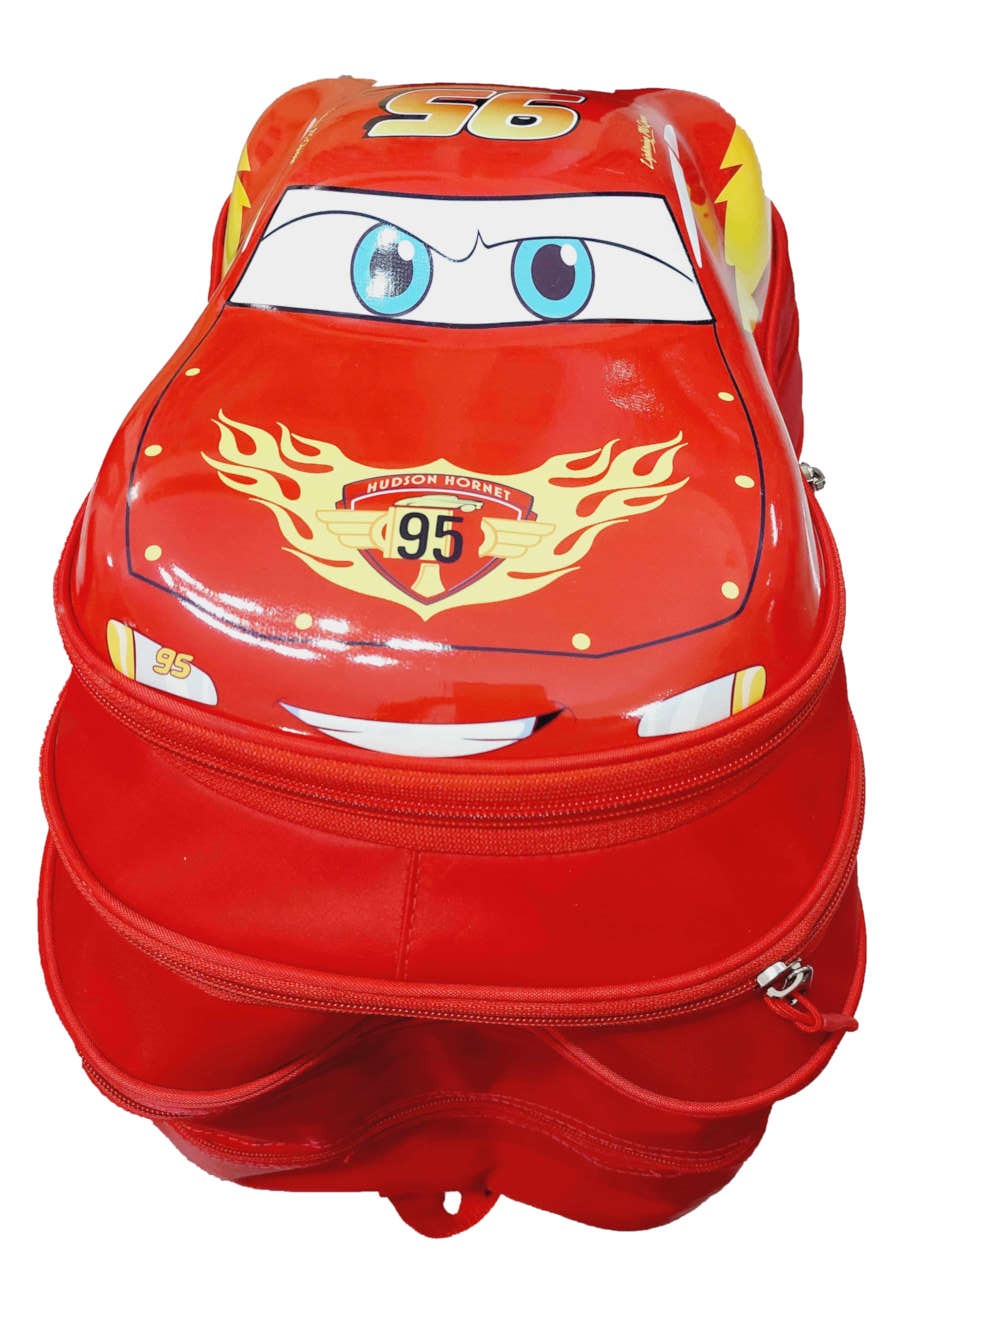 School Bag For Kids/Boys- McQueen 3D Backpack Disney Cars Themed –